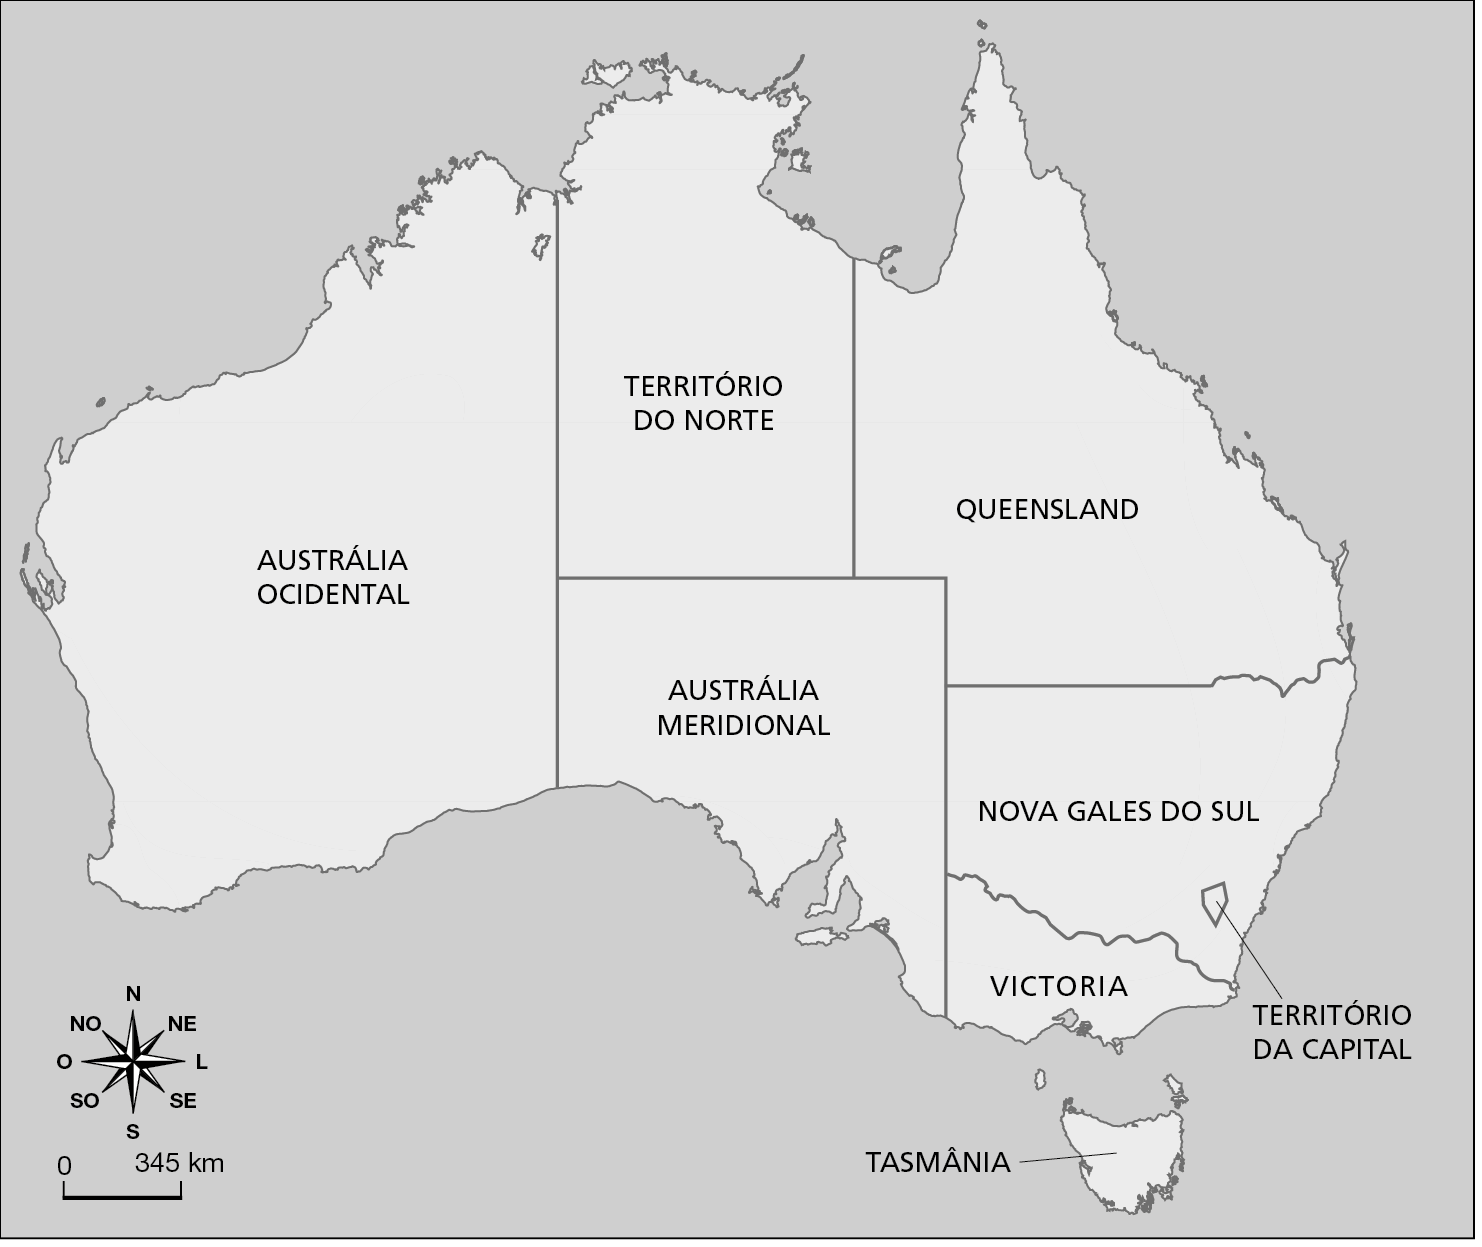 Mapa em preto e branco. Austrália: político. Mapa representando a distribuição dos territórios da Austrália. Território da capital (porção sudeste). Nova Gales do Sul (porção sudeste). Queensland (porção nordeste). Território do Norte (porção norte). Austrália Ocidental (porção noroeste, oeste e sudoeste). Austrália Meridional (porção sul). Victoria (porção sul). Tasmânia (ilha ao sul do continente). Há um carimbo no mapa indicando: MODELO. Na parte inferior esquerda, rosa dos ventos e escala de 0 a 345 quilômetros.